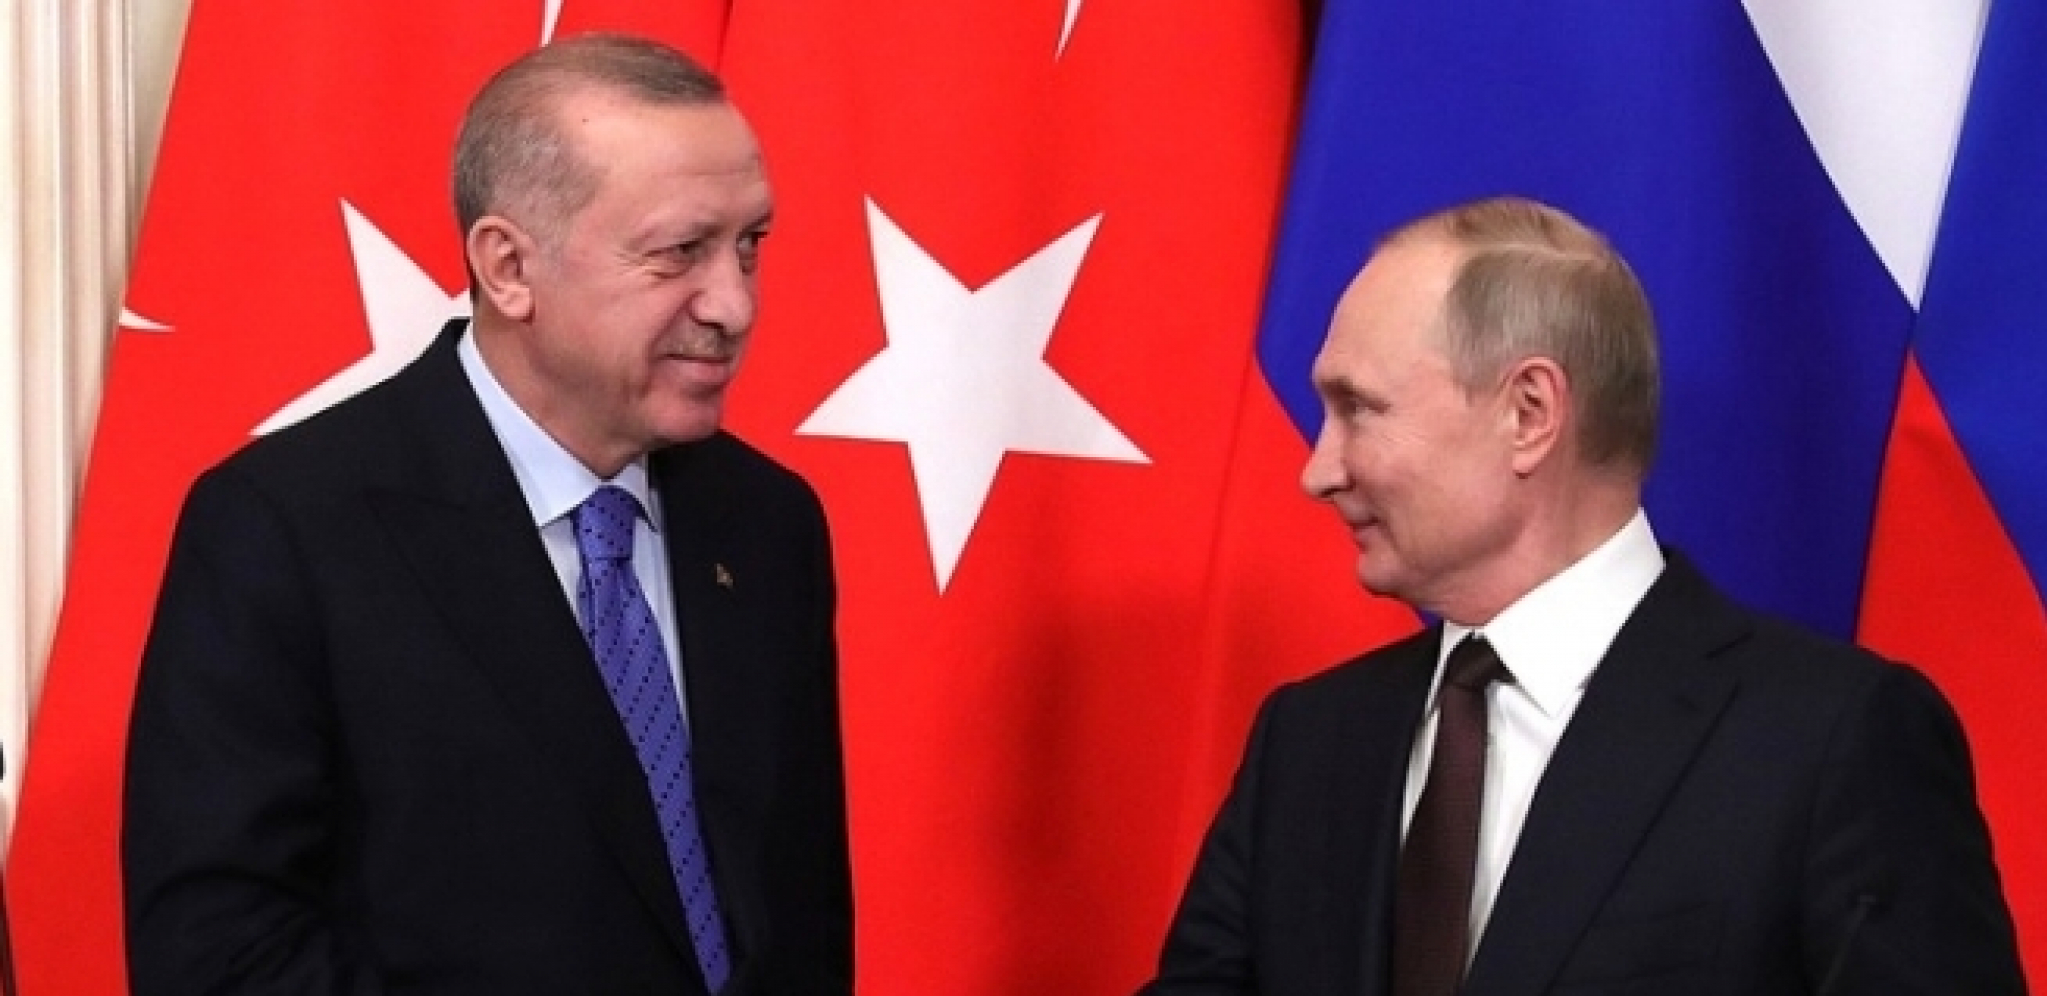 BEZBEDNOST NA PRVOM MESTU: Putin i Erdogan na korak od postizanja velikog strateškog sporazuma